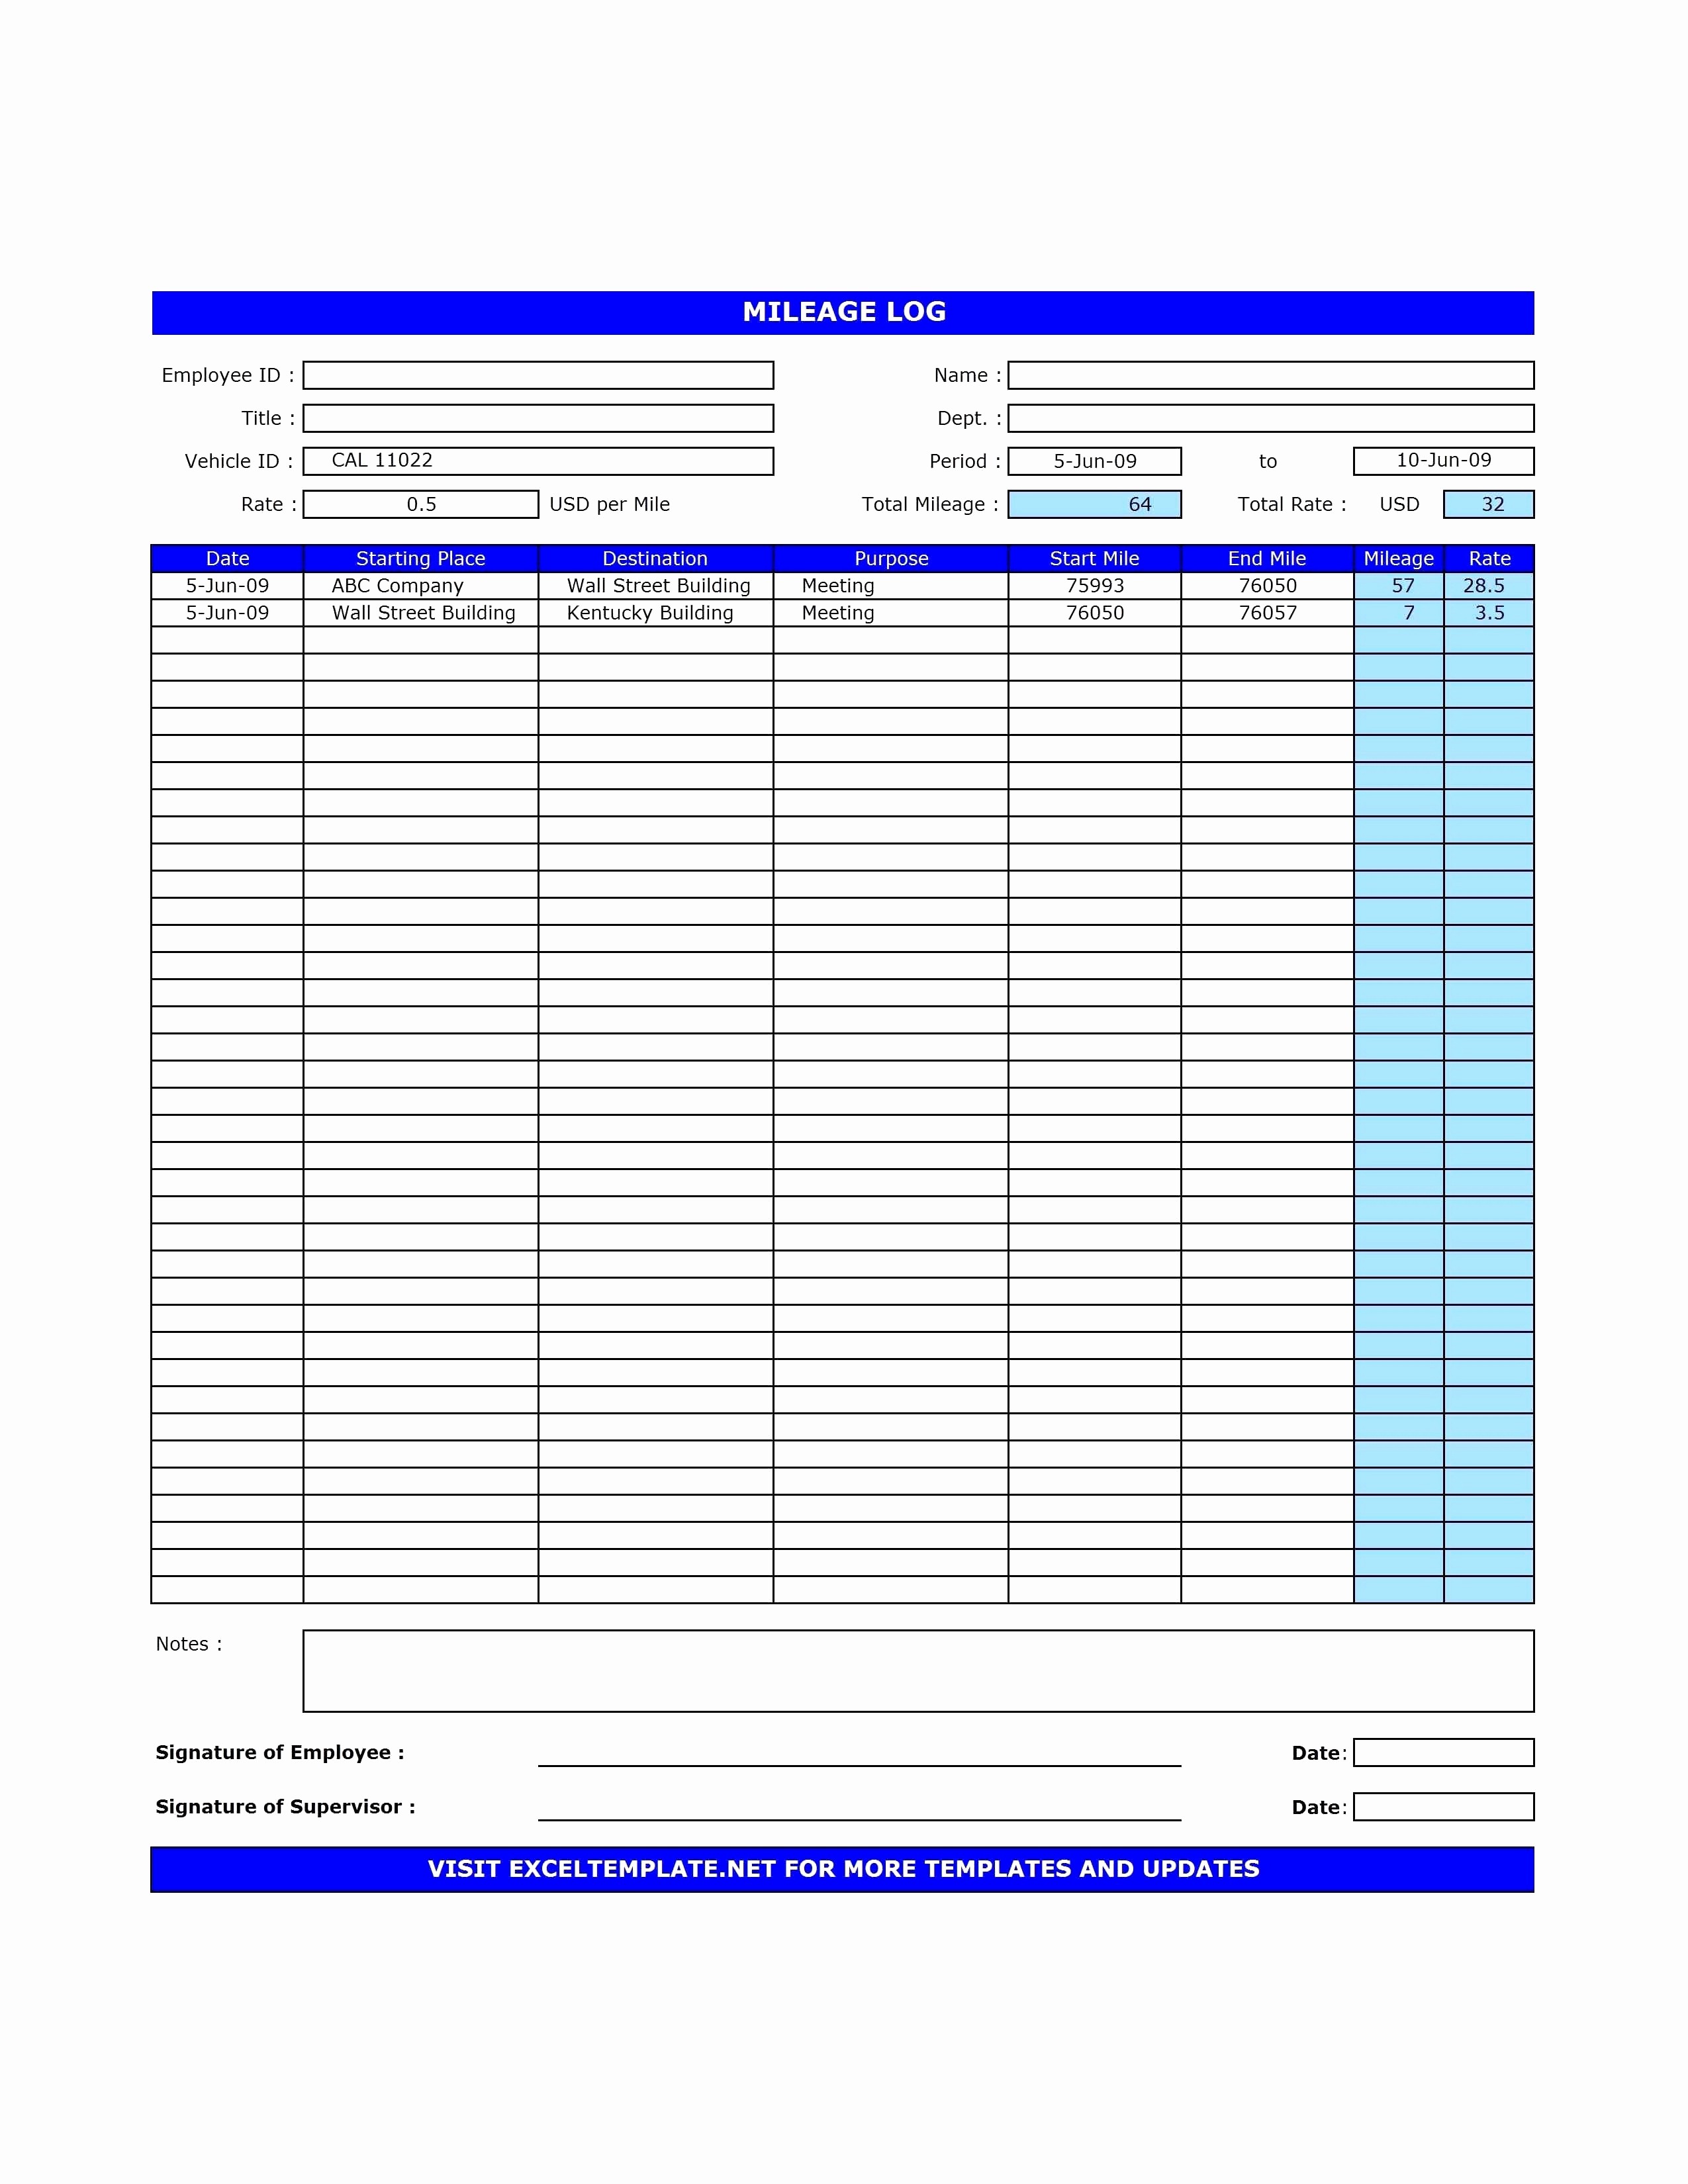 Reloading Log Excel Best Of Spreadsheet Fresh